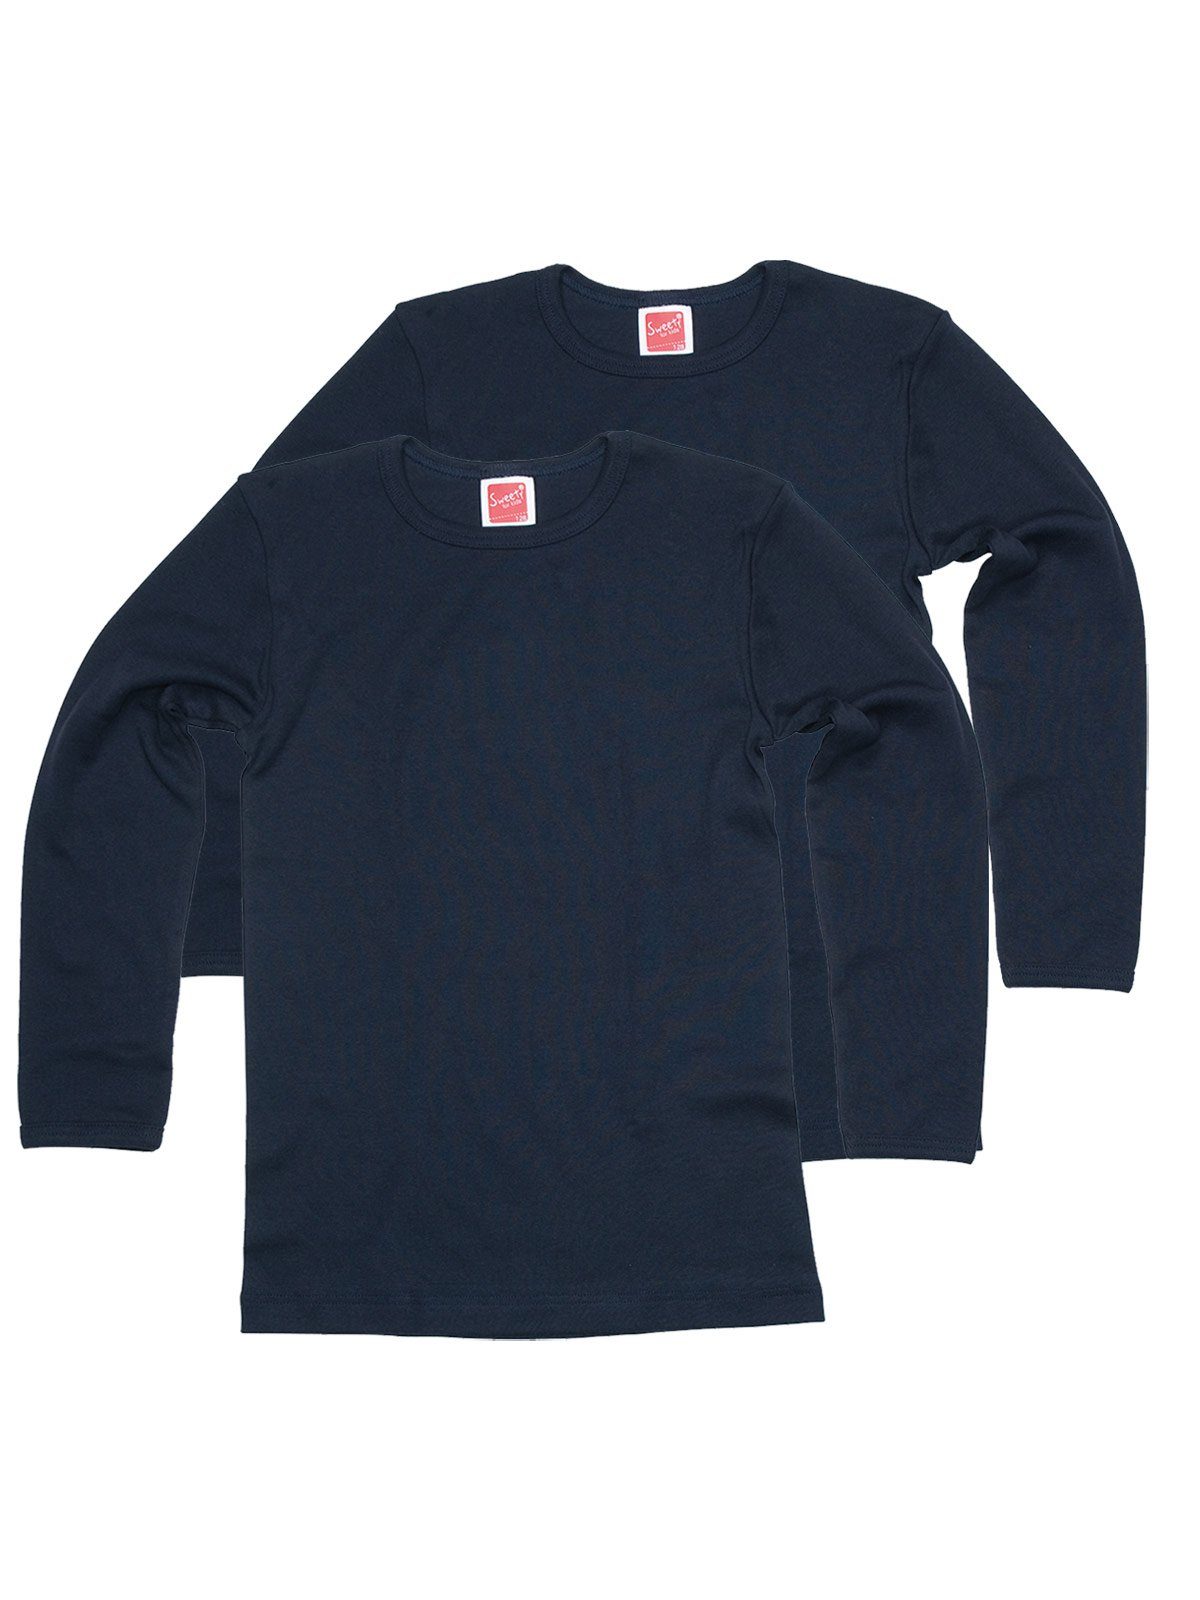 Sweety for Kids Achselhemd 2er Sparpack Kinder Shirt Winterwäsche (Spar-Set, 2-St) hohe Markenqualität navy